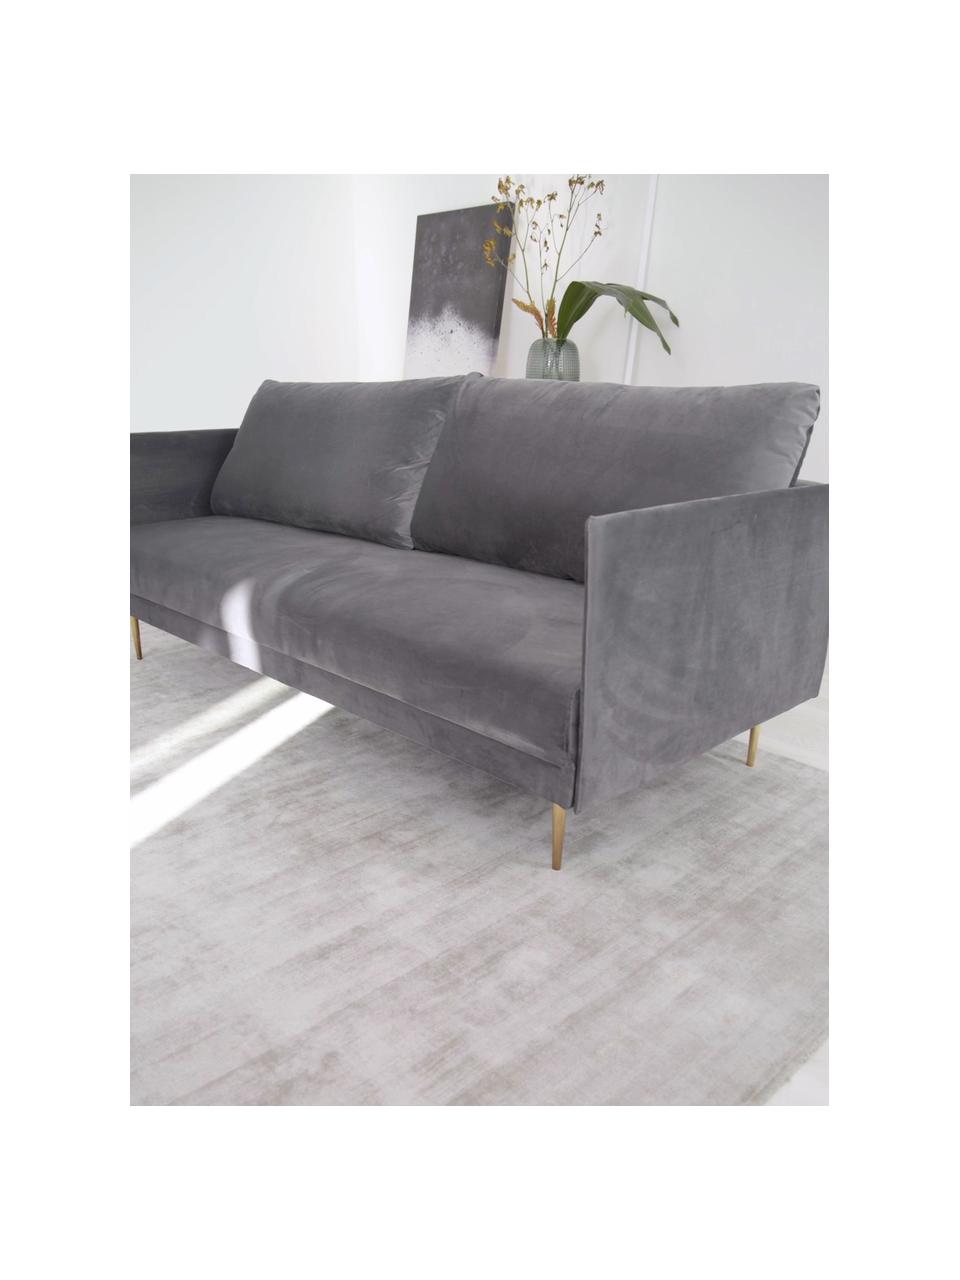 Sofa rozkładana z aksamitu Lauren, Tapicerka: aksamit (poliester) Dzięk, Nogi: metal lakierowany, Aksamitny szary, S 206 x W 87 cm